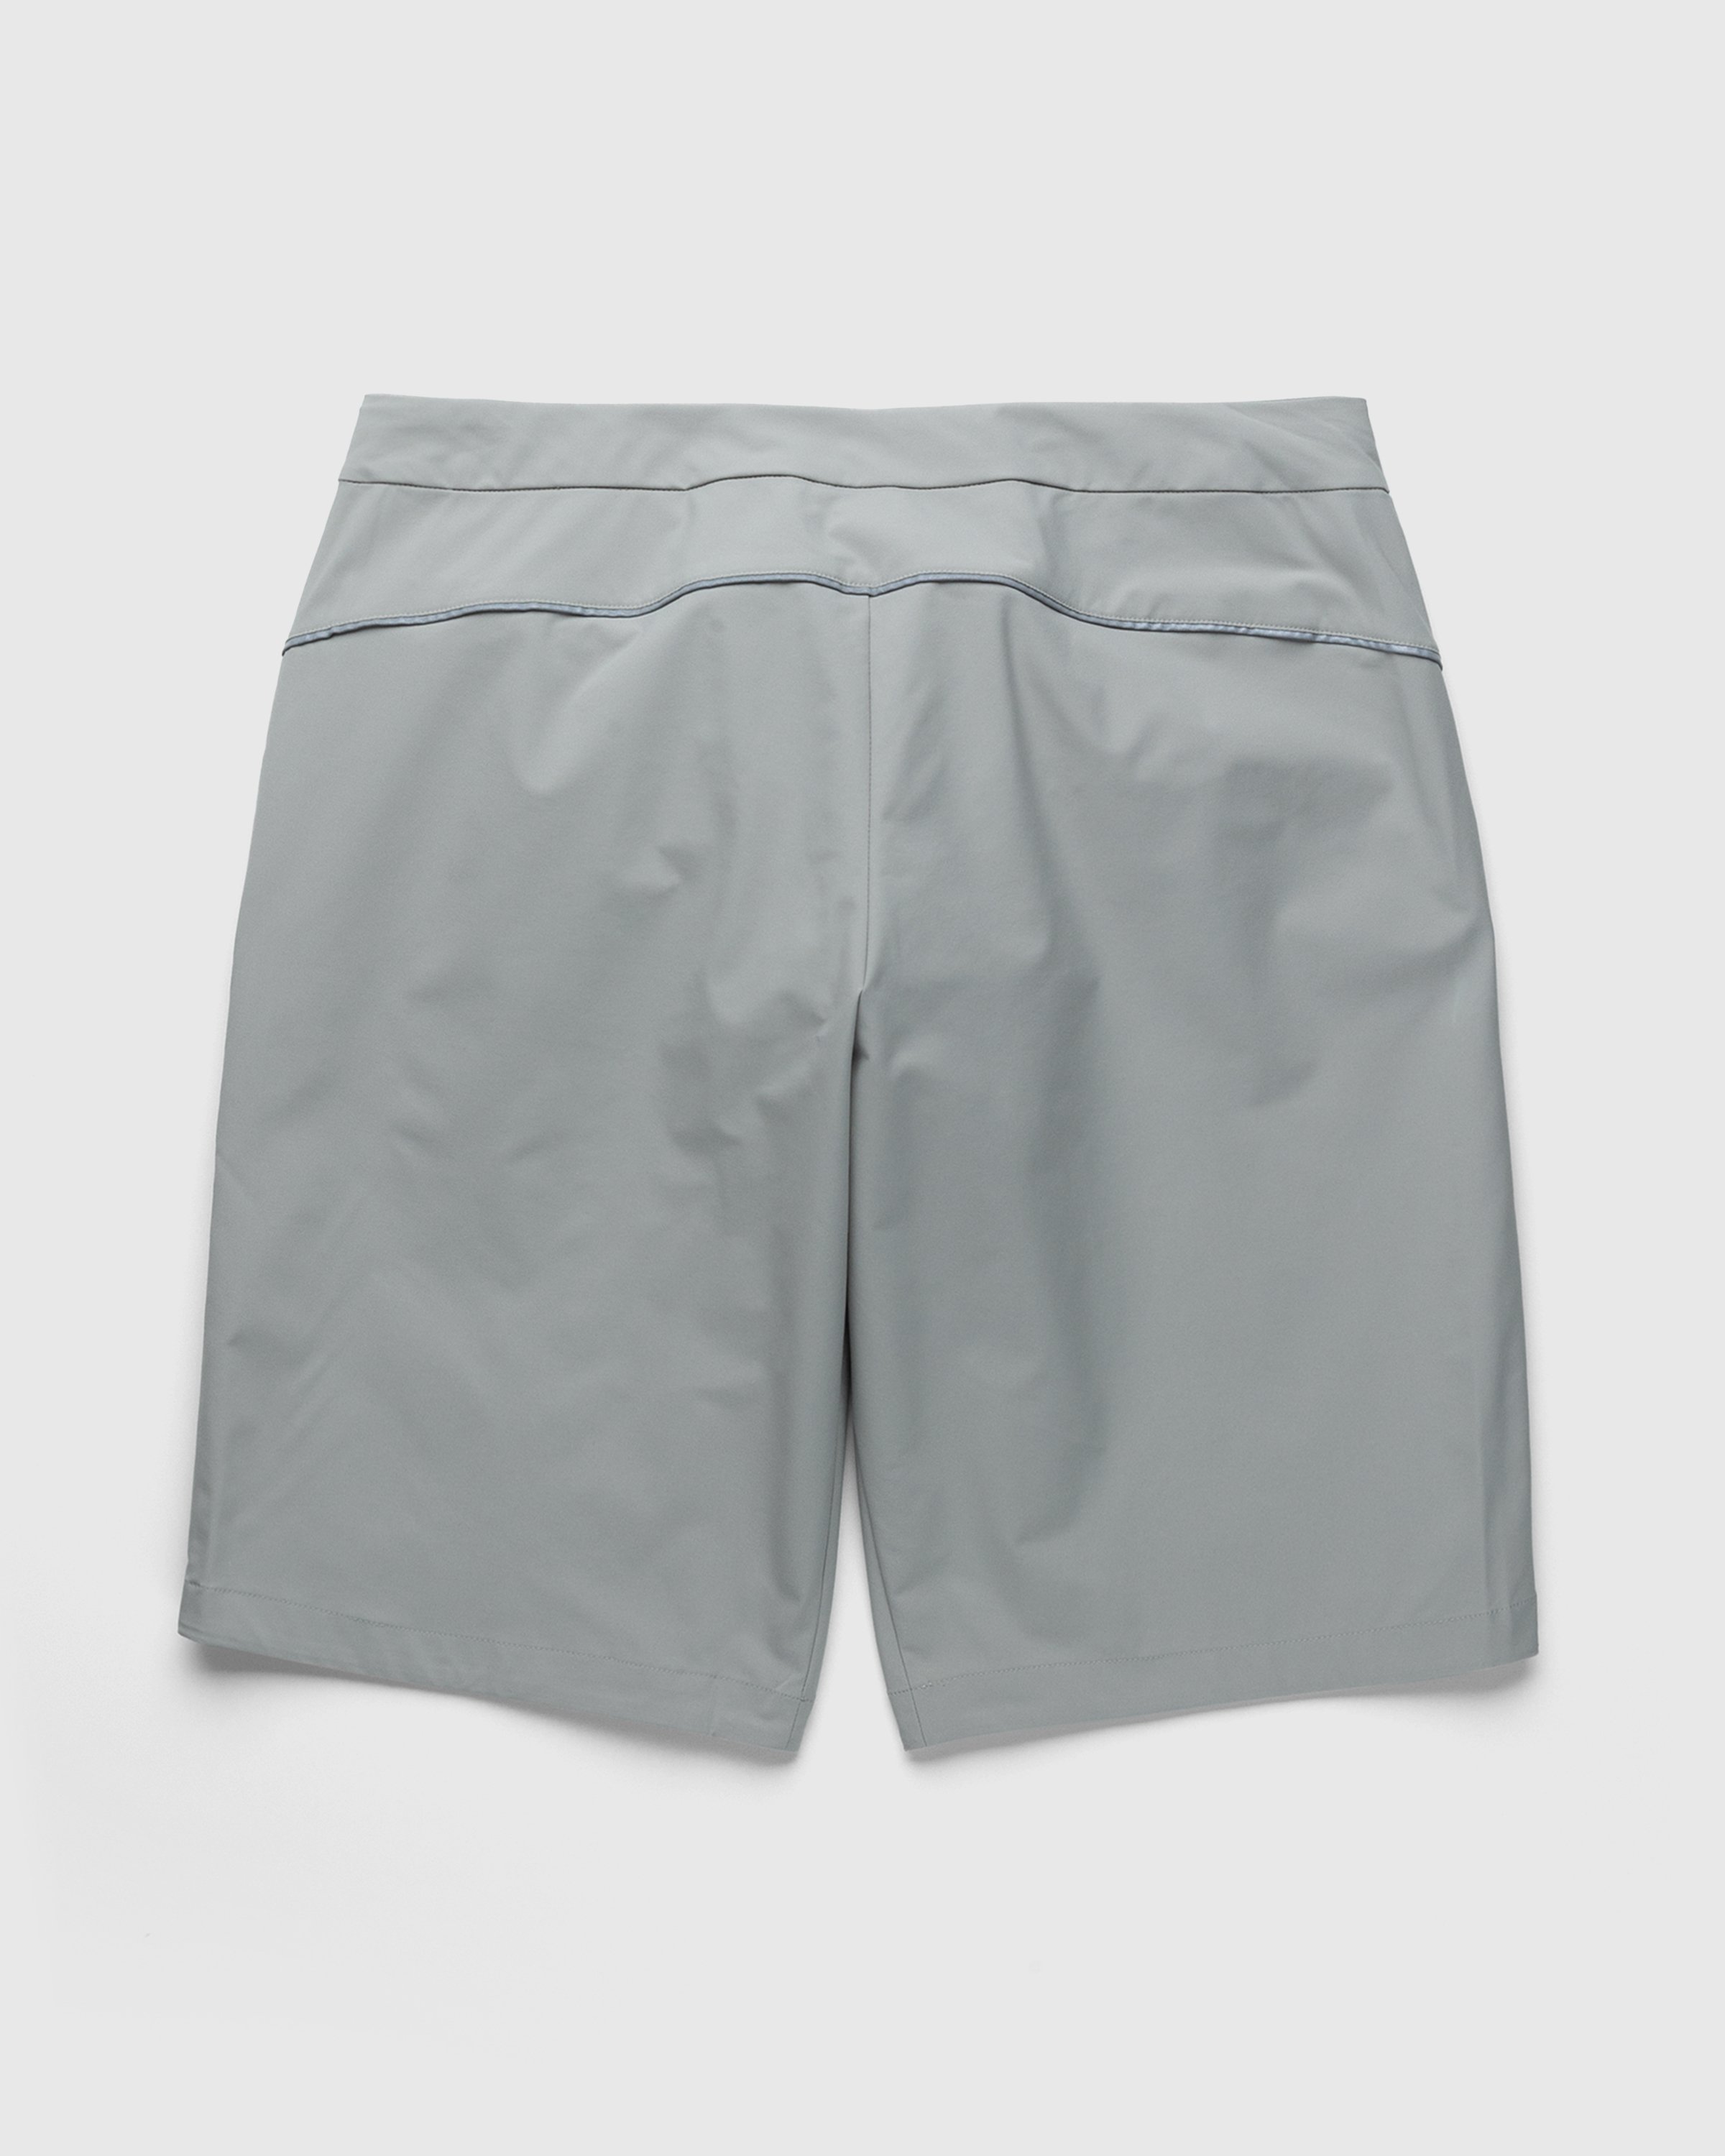 Adidas - Voyager Shorts Feather Grey/Savanna - Clothing - Beige - Image 2